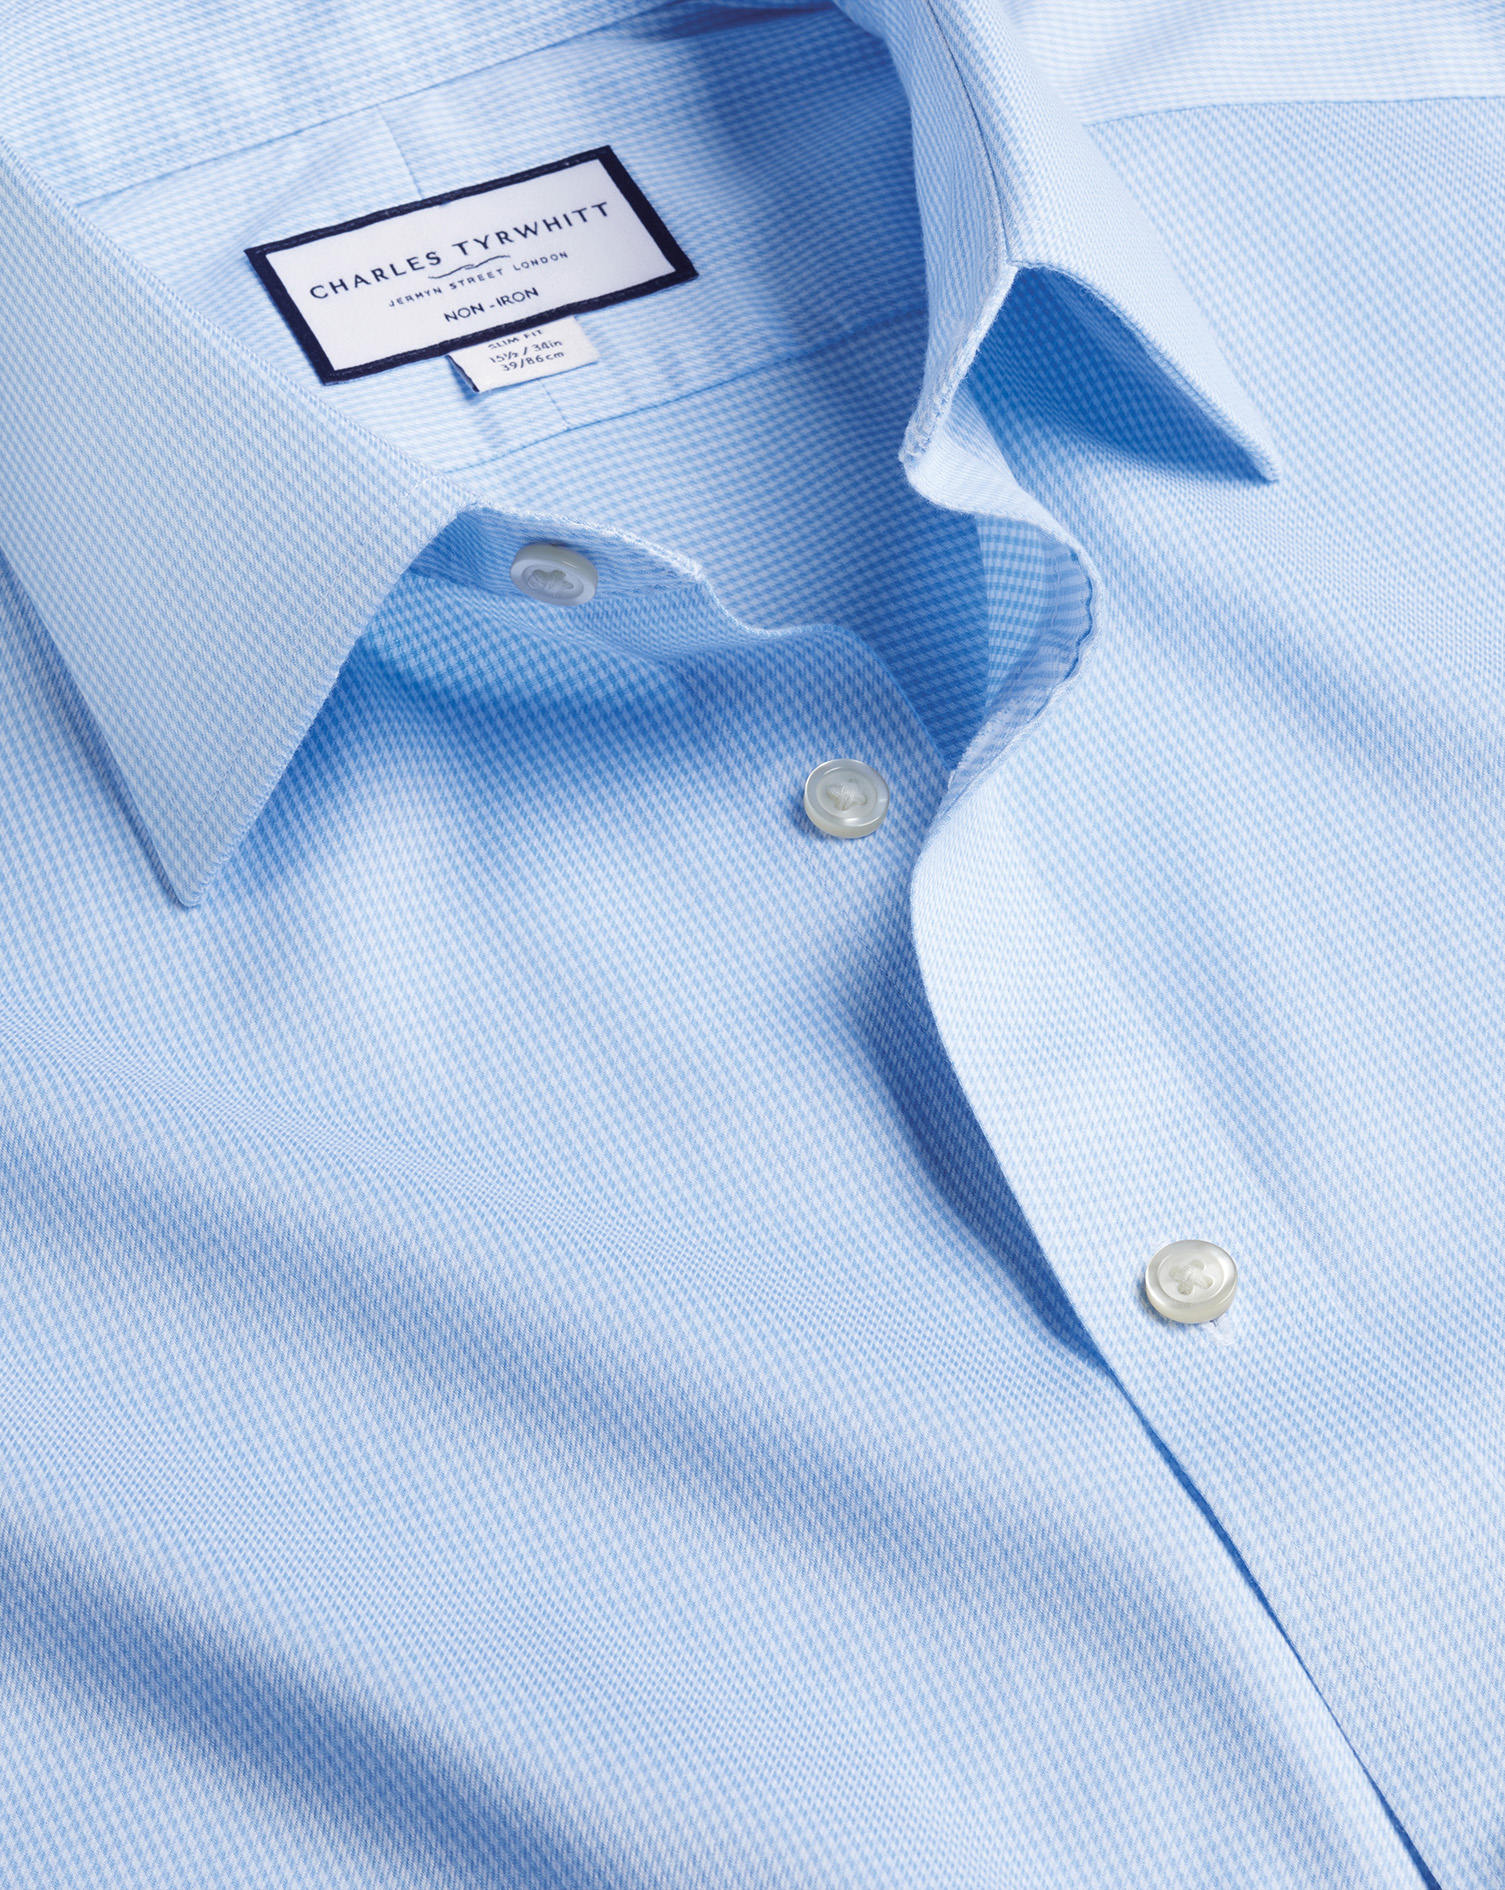 Men's Charles Tyrwhitt Non-Iron Puppytooth Dress Shirt - Sky Blue French Cuff Size XXXL Cotton
